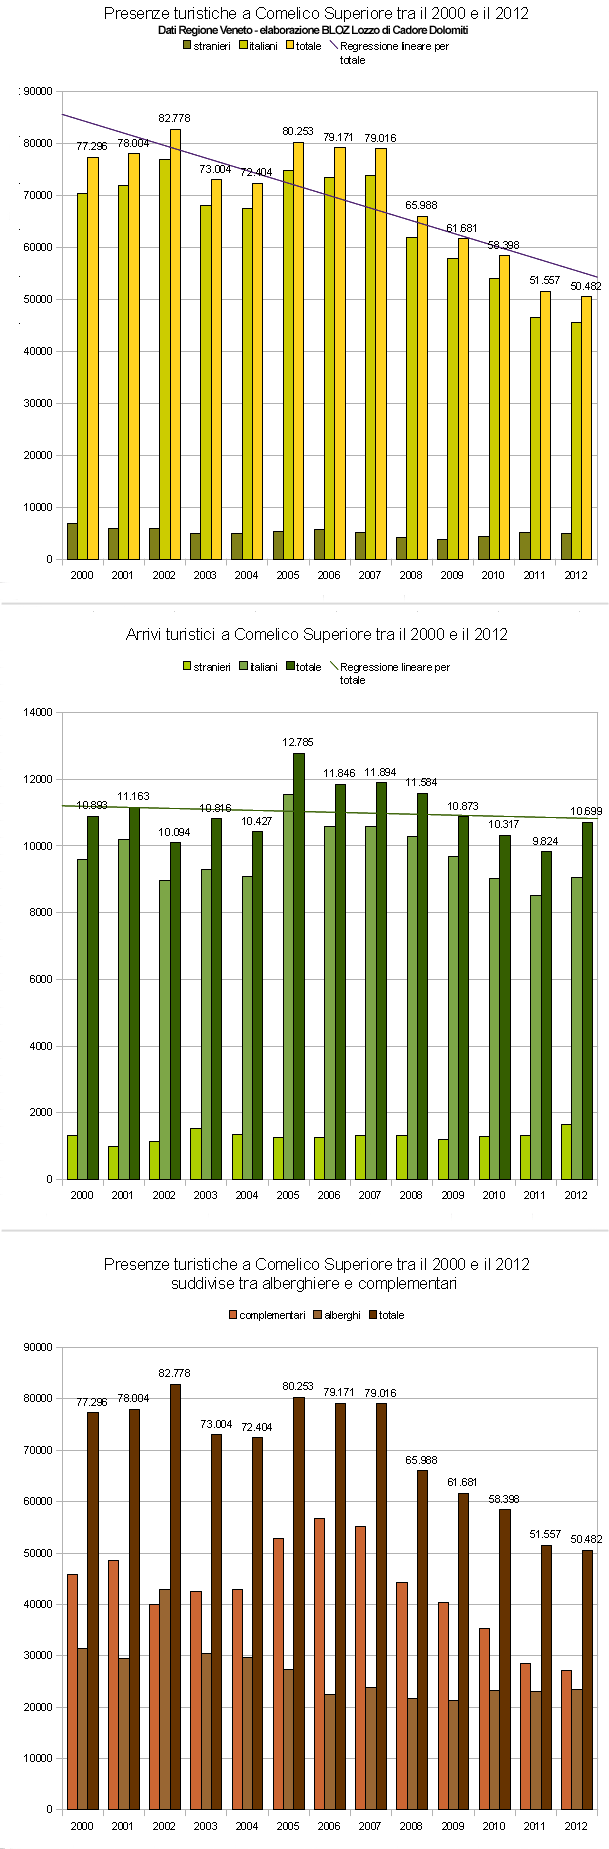 Andamento arrivi e presenze turistiche nel Comelico Superiore tra il 2000 e il 2012